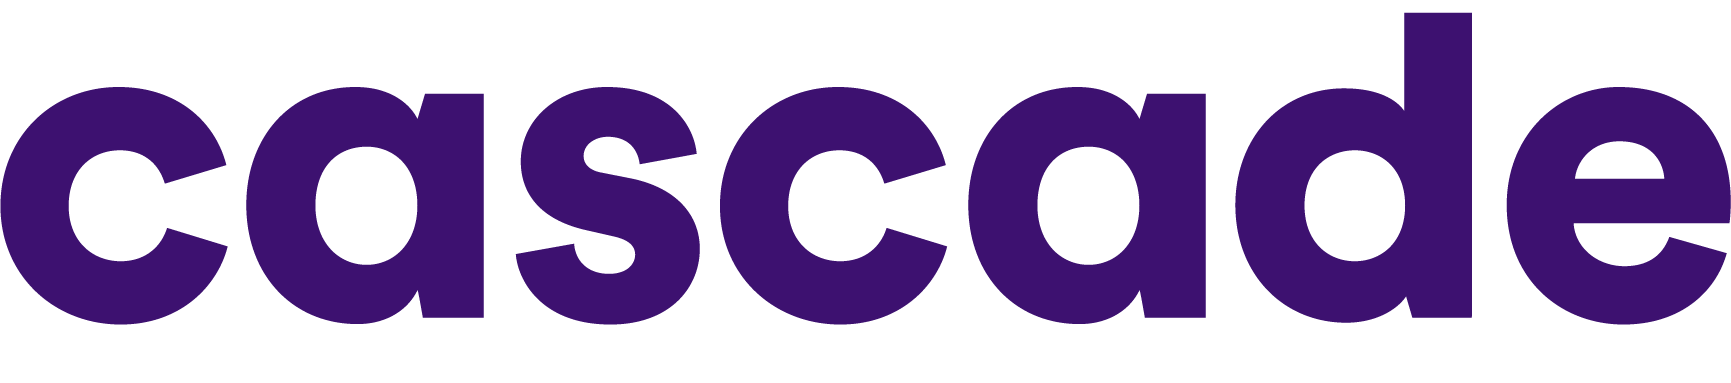 Cascade logo text